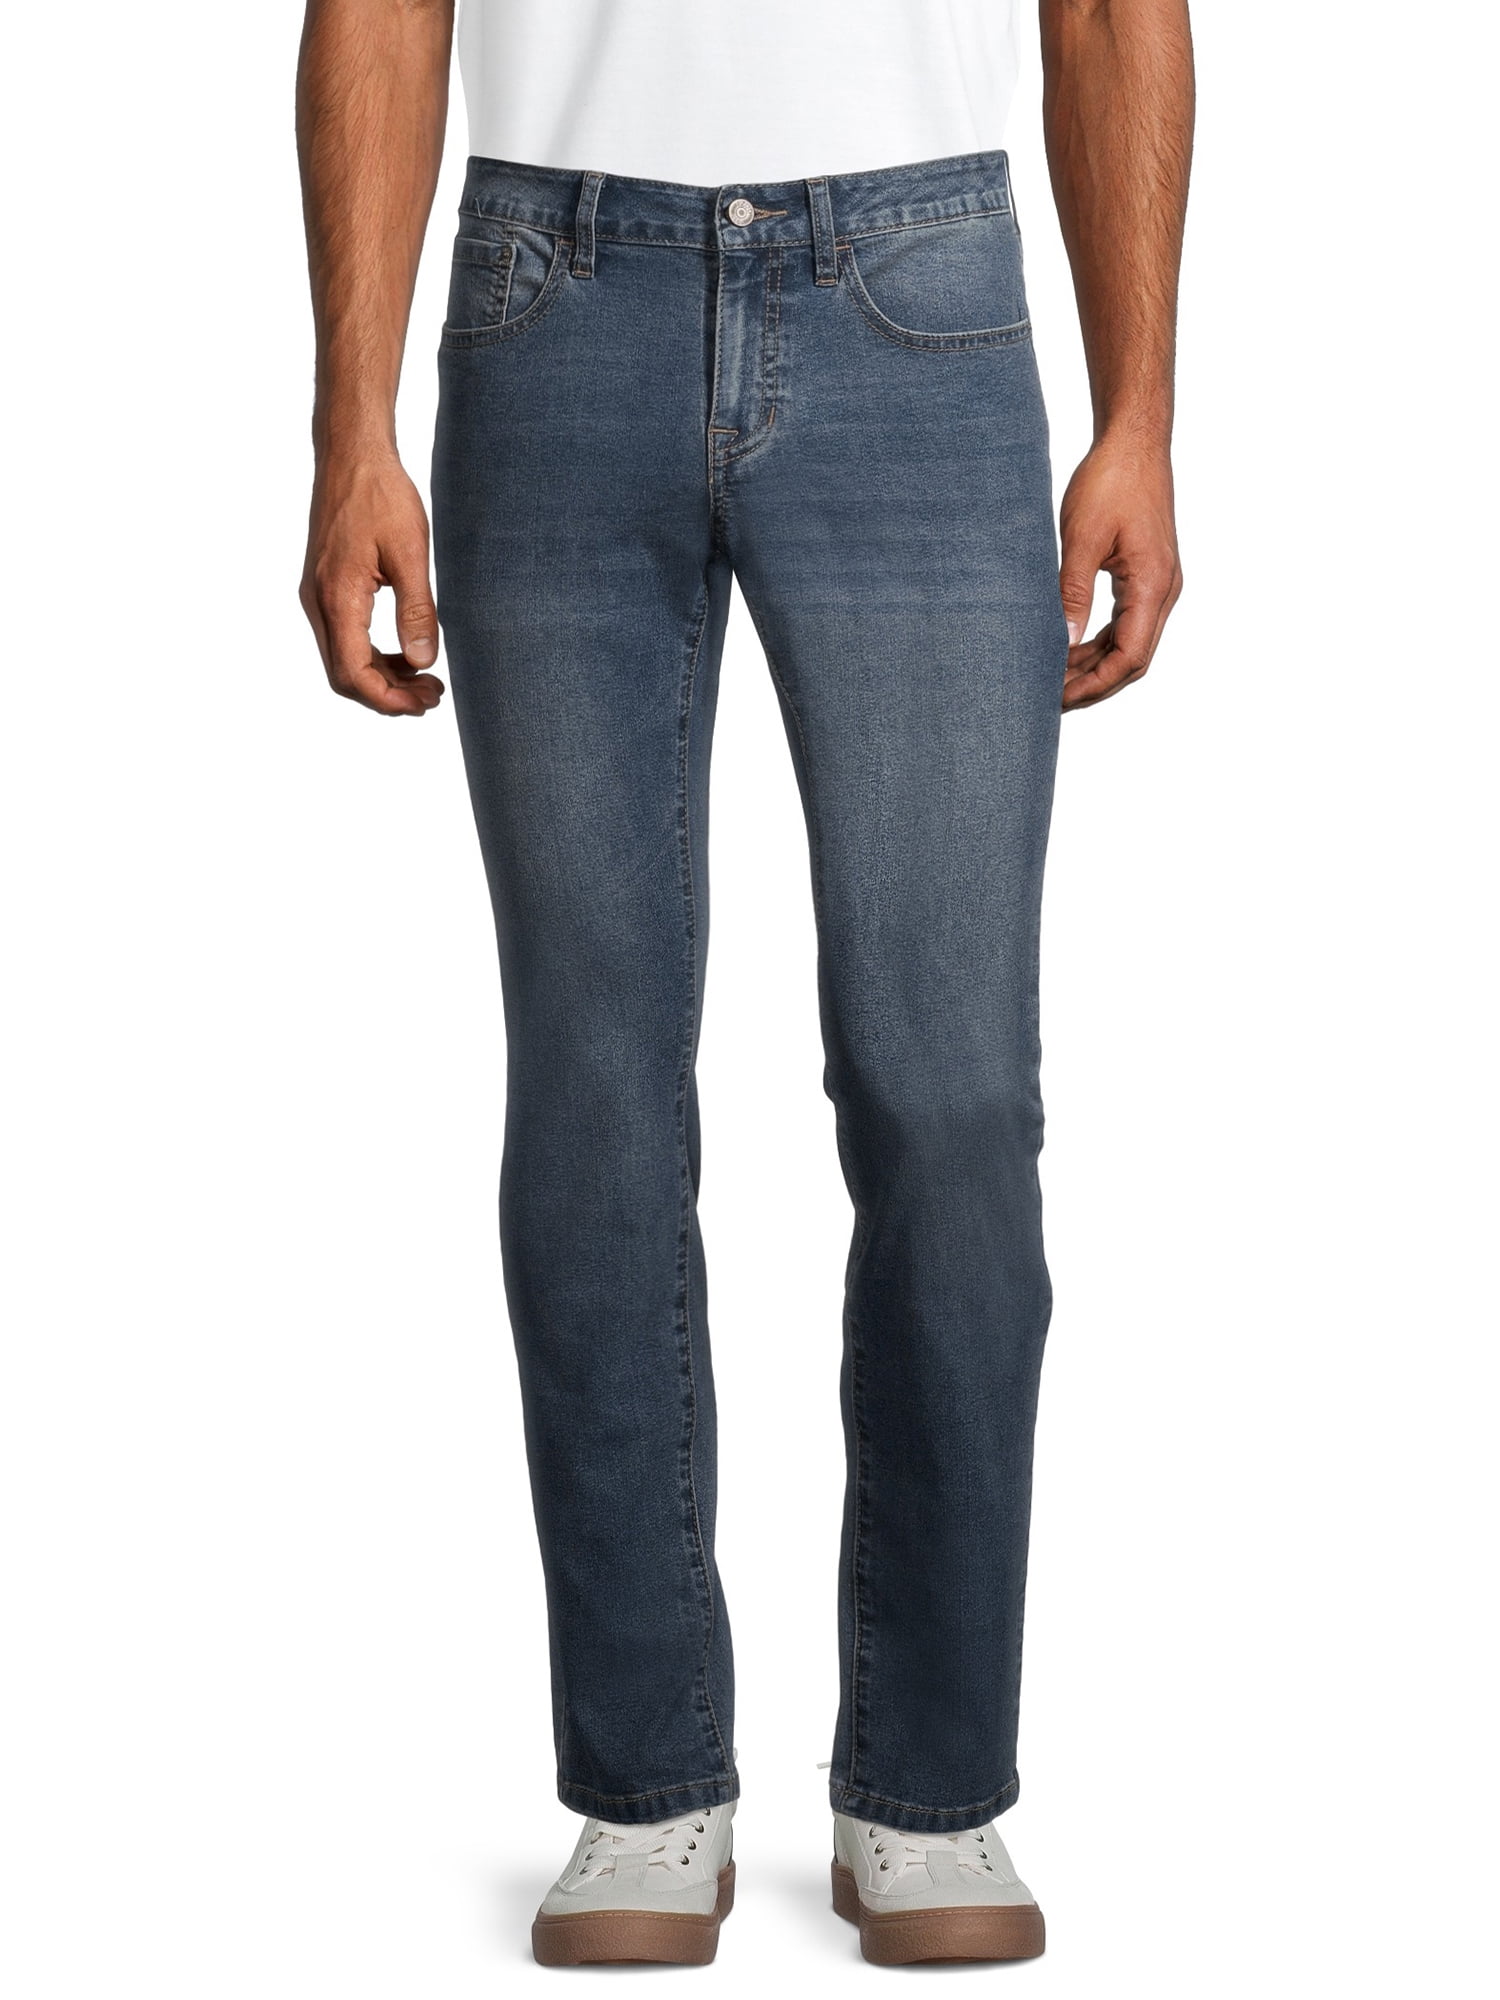 IZOD Men's Slim Straight Fit Jeans - Walmart.com